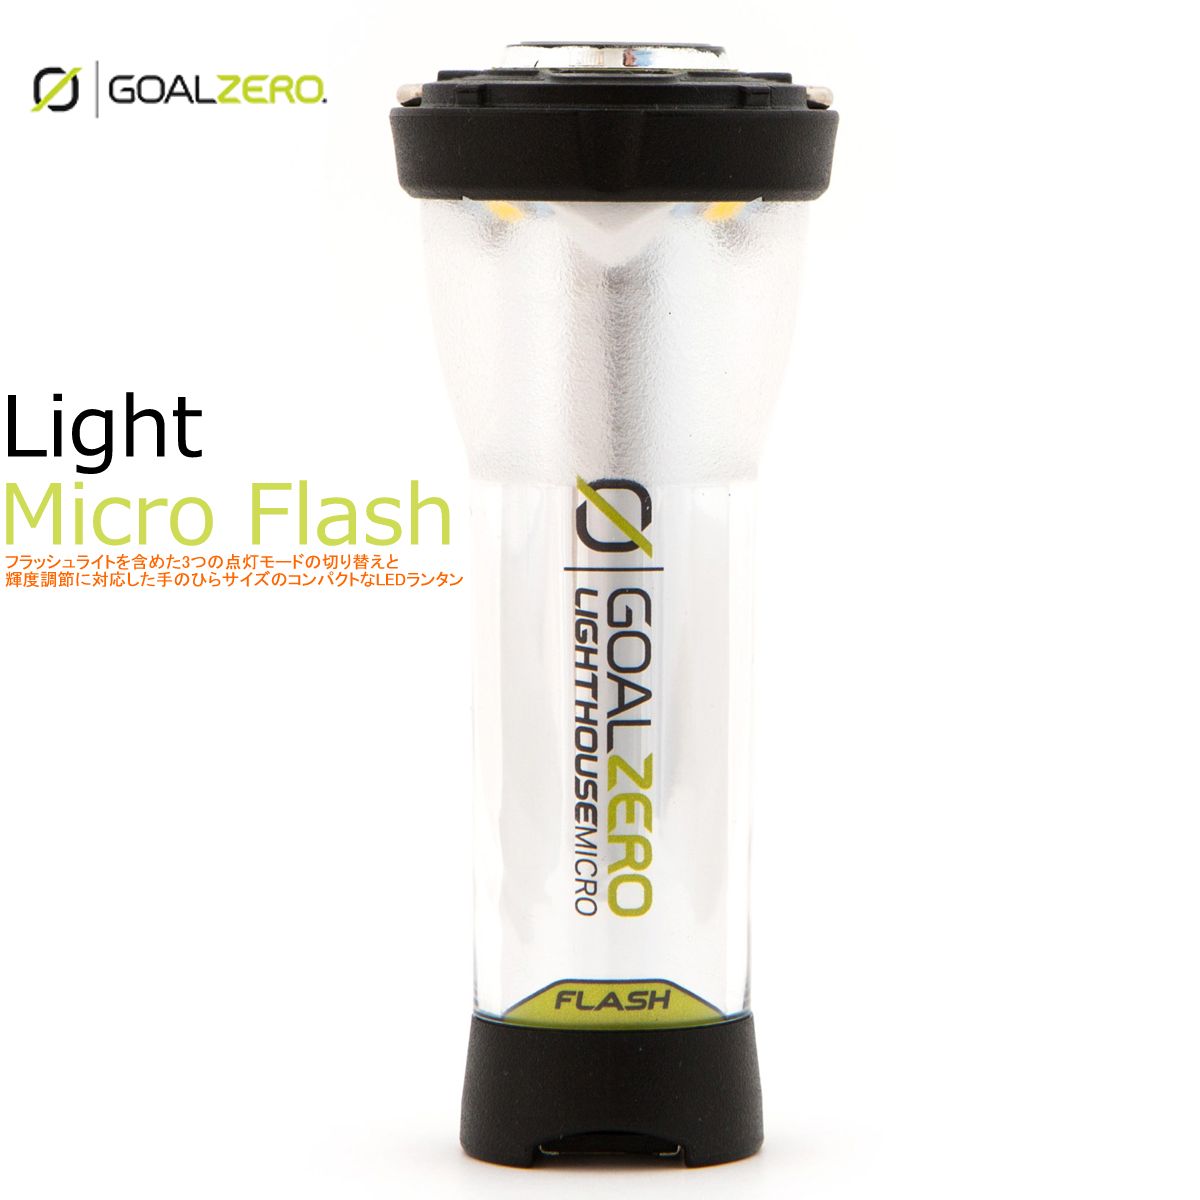 国内正規商品 GOAL ZERO Lighthouse Micro Flash フラッシュ ゴールゼロ LED 多機能 ランタン 150ルーメンス USB